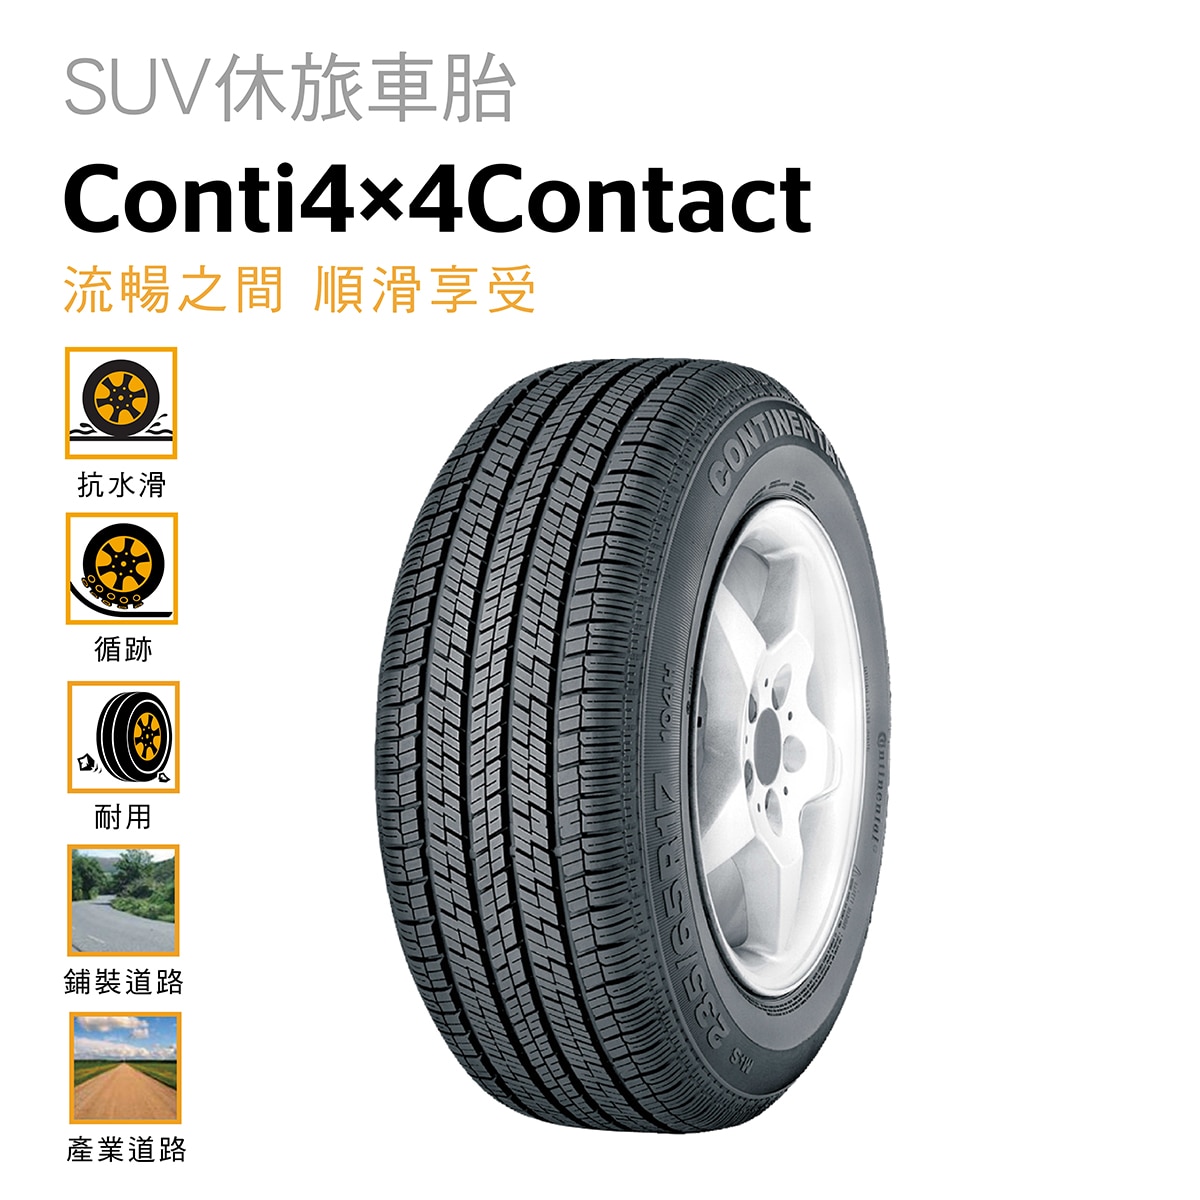 Continental 馬牌輪胎Conti 4x4 Contract 適用於休旅車和輕度越野車款，寧靜與舒適兼具的乘駕首選。具備優異的排水性能，在一般輕越野路況下，也能保持卓越的抓地力。